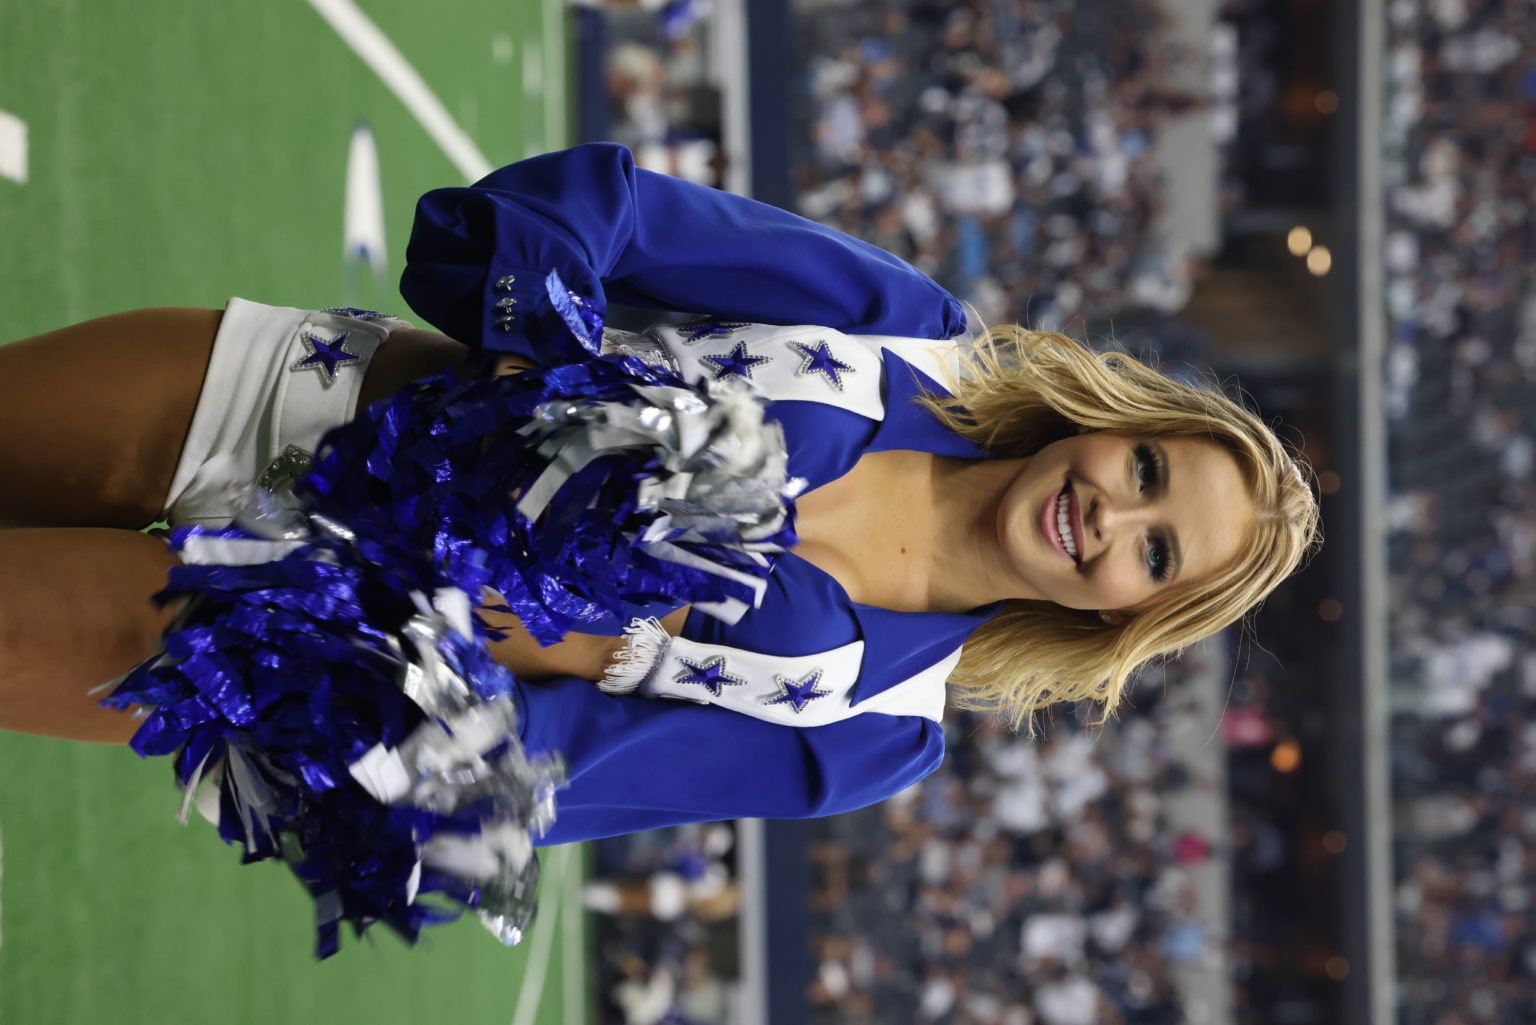 Kylie – Dallas Cowboys Cheerleaders